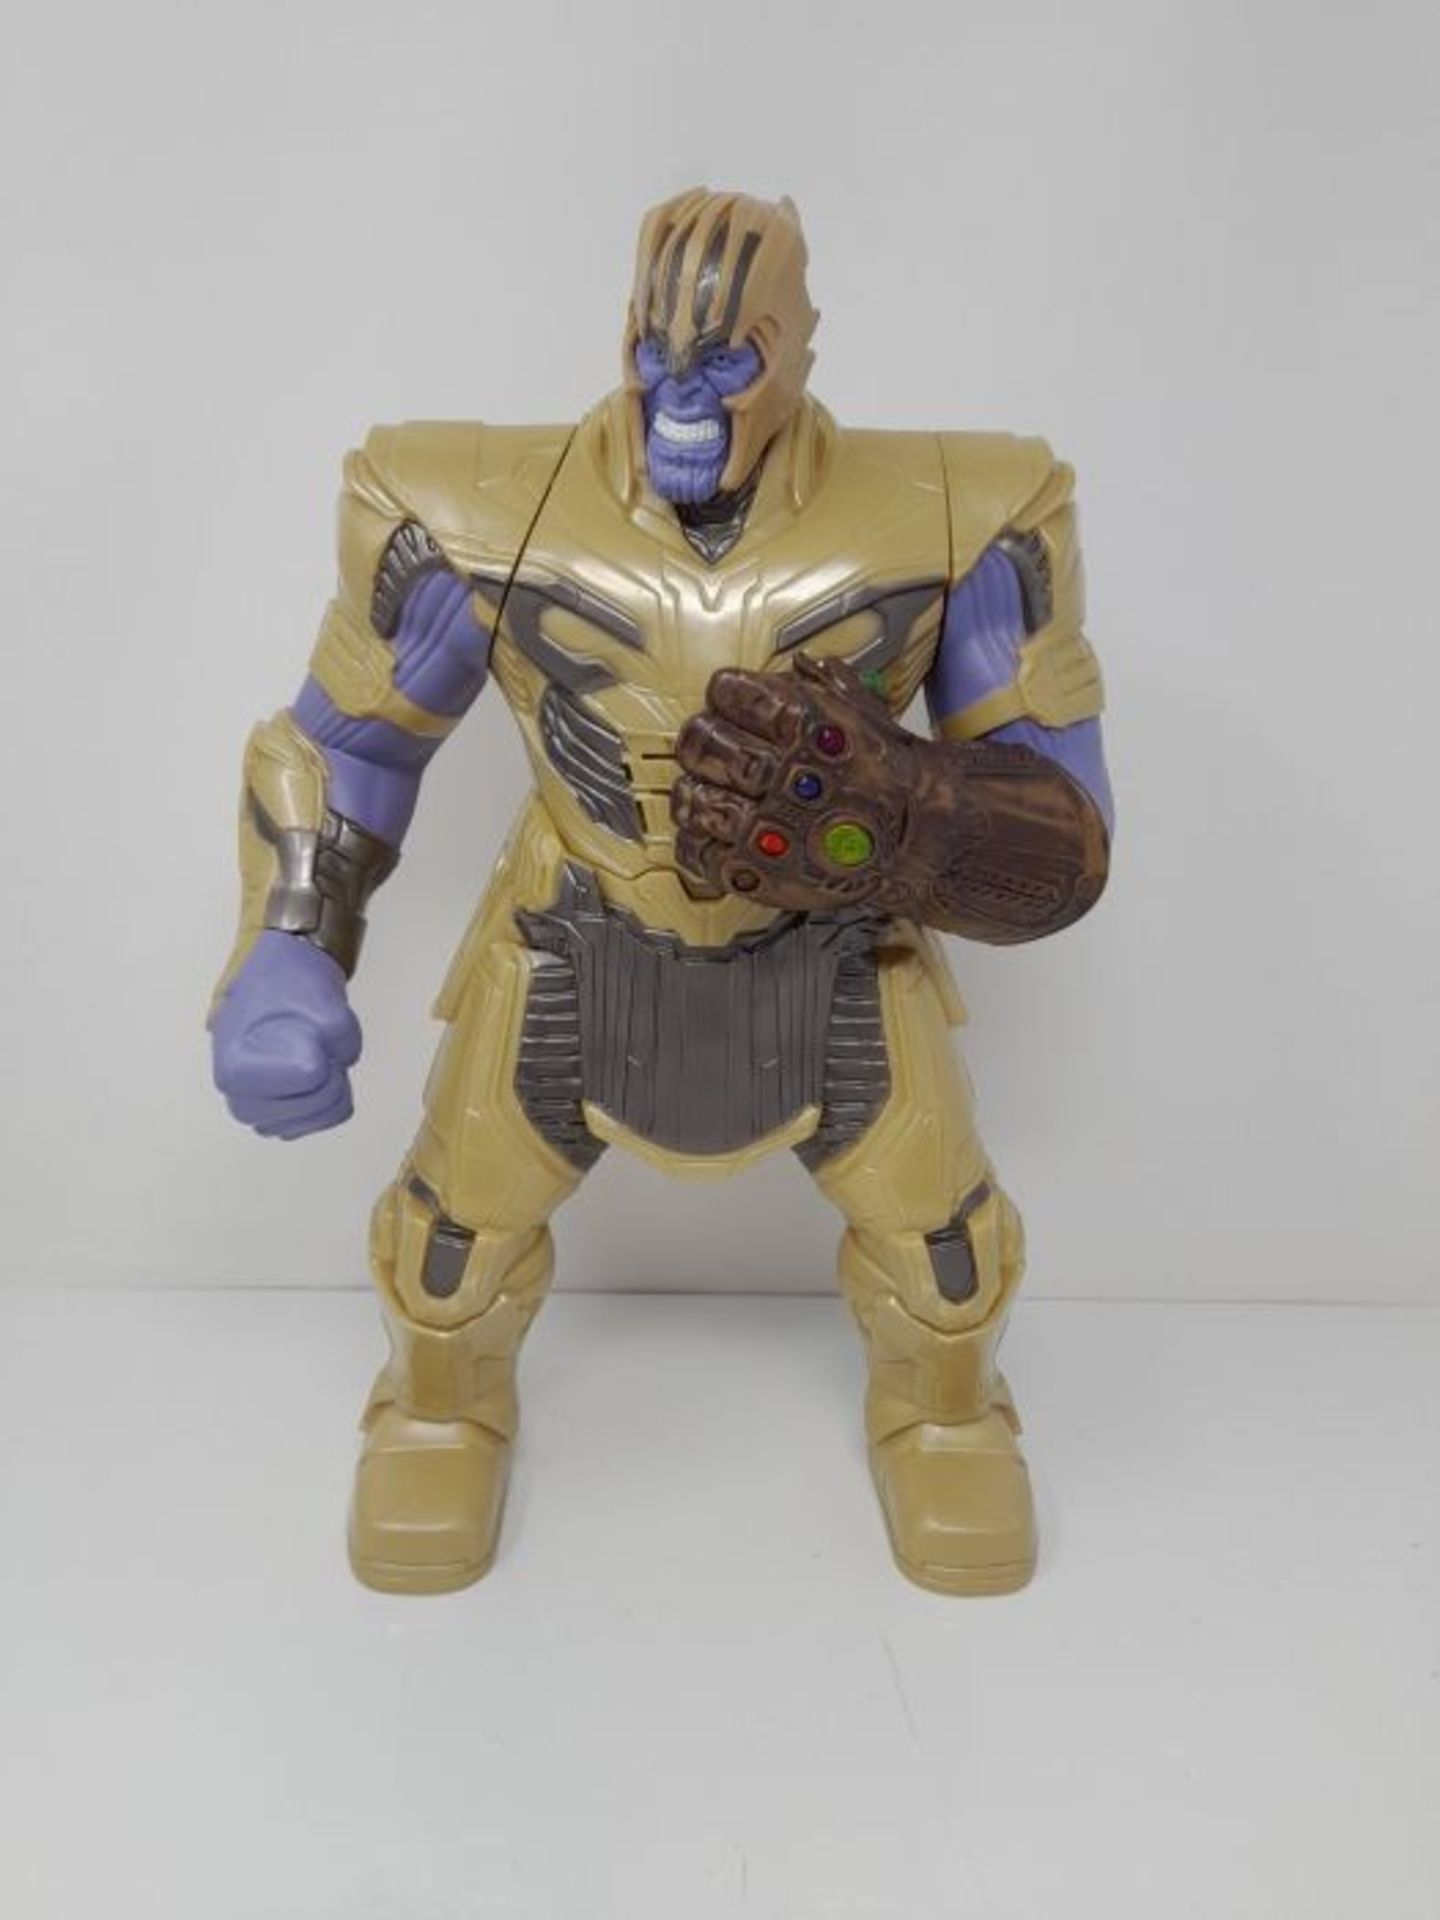 Hasbro Marvel Avengers: Endgame Elektronischer Thanos - Image 2 of 3